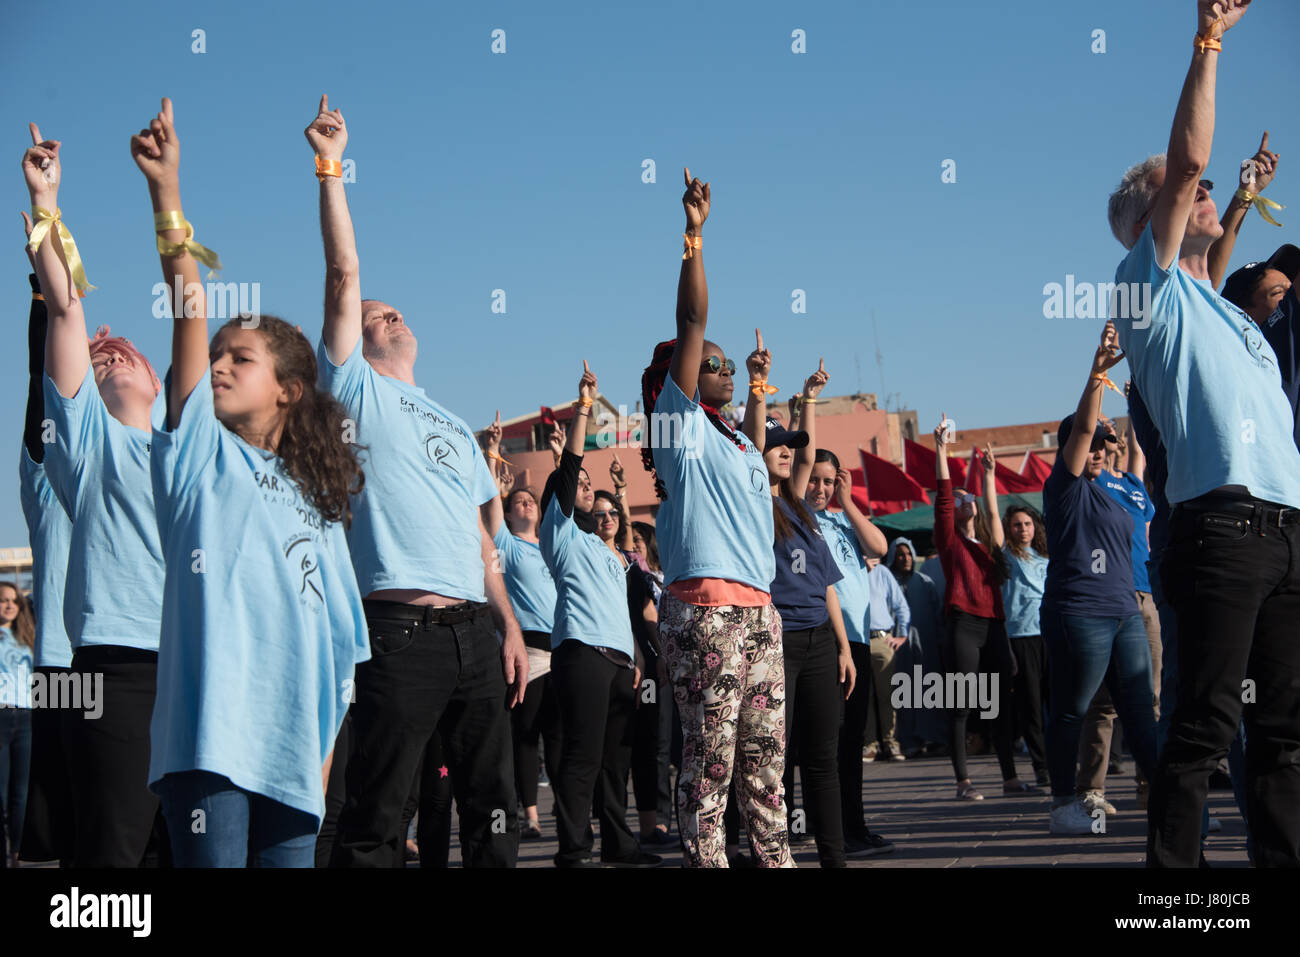 Giovani attivisti al COP22 conferenza ONU sul clima del prendere parte a un flashmob dance protesta in piazza Jemaa El Fnaa, il mercato centrale plaza a Marrakech, Marocco, 10 novembre 2016. Foto Stock